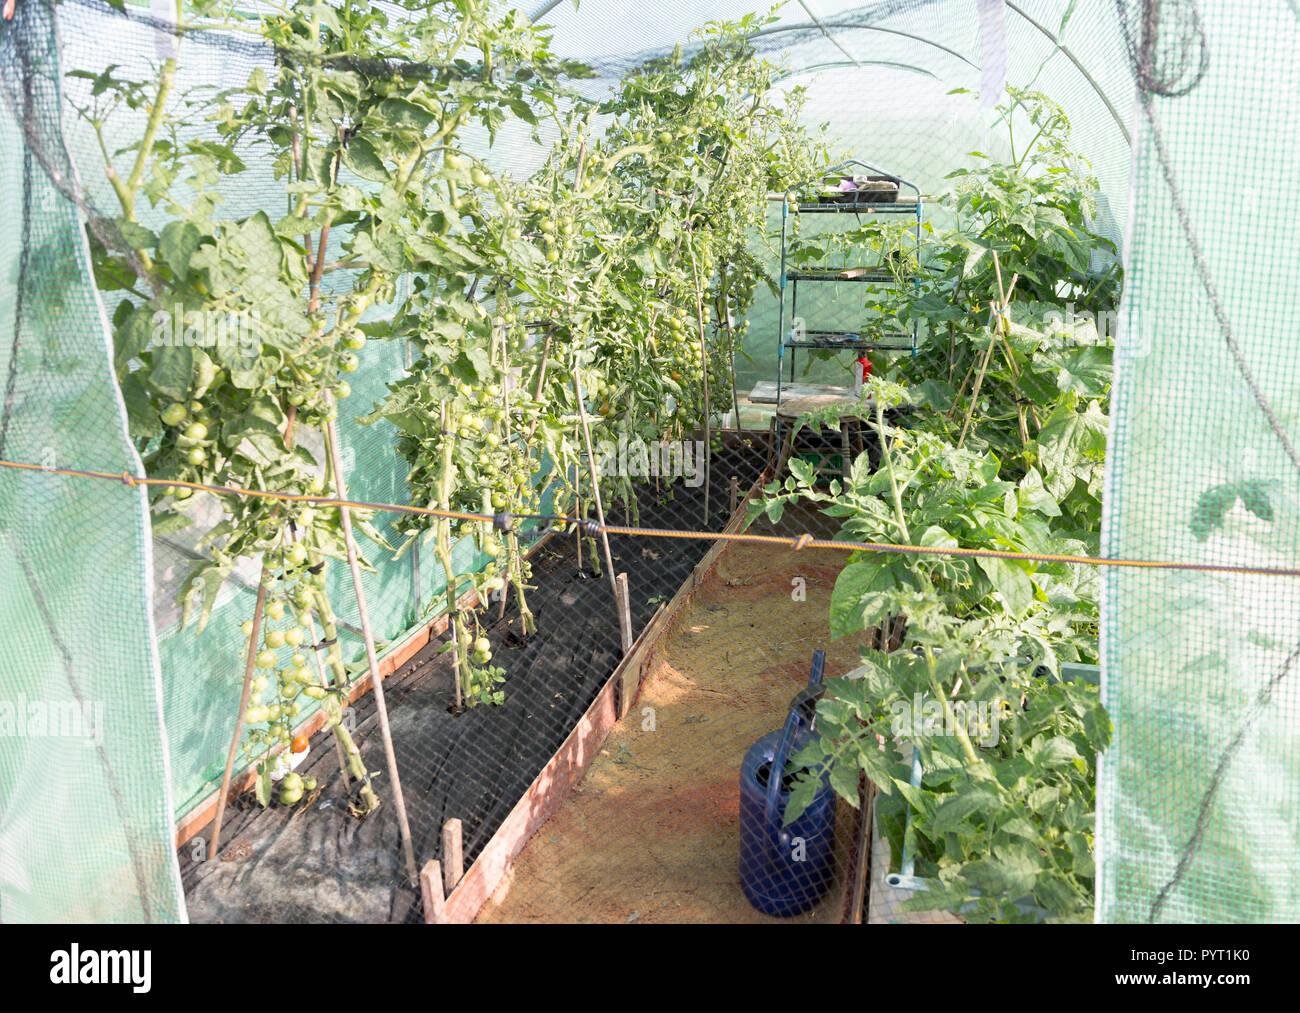 Las plantas de tomate crecen en invernadero de plástico carpa, Shottisham, Suffolk, Inglaterra, Reino Unido. Foto de stock